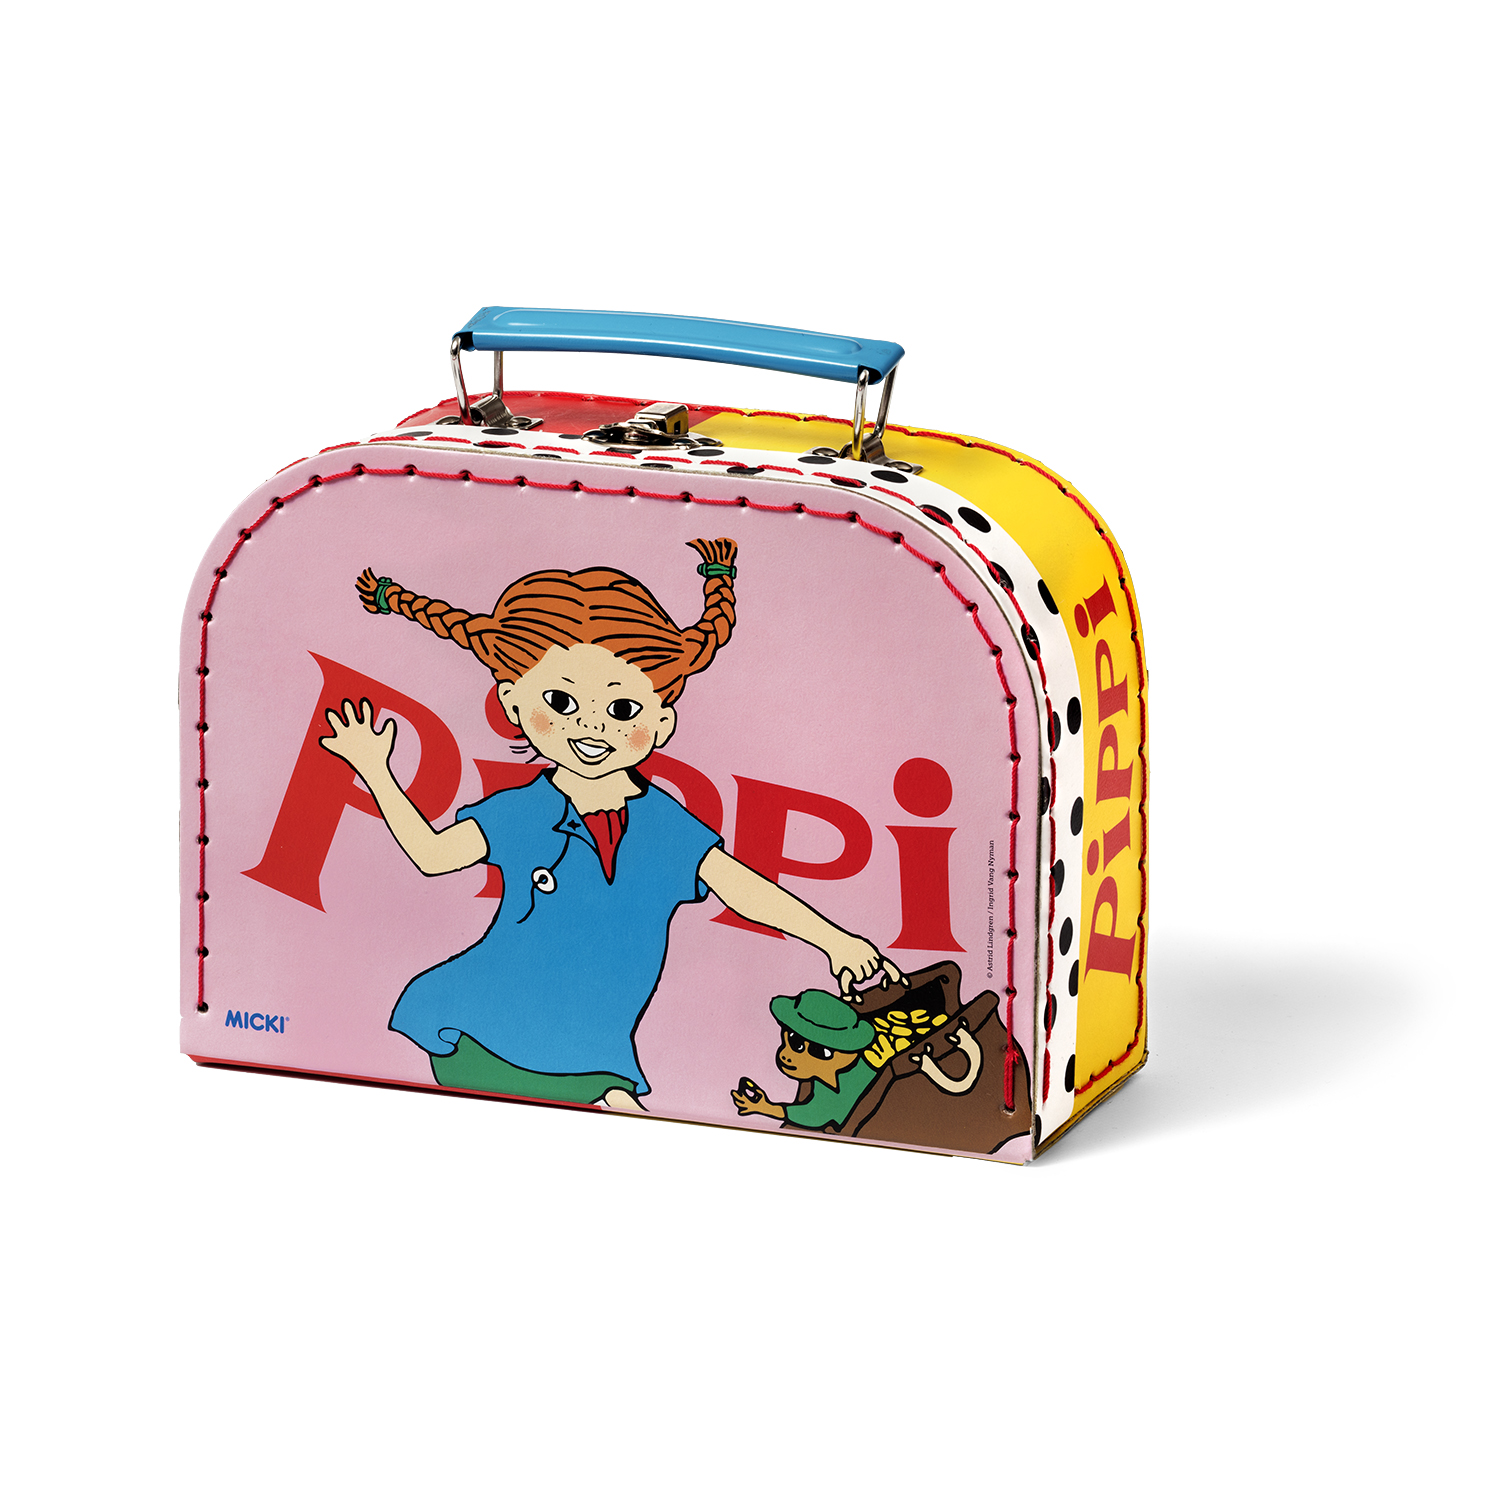 Pippi pippi kids' bag travel bag 20 cm pink